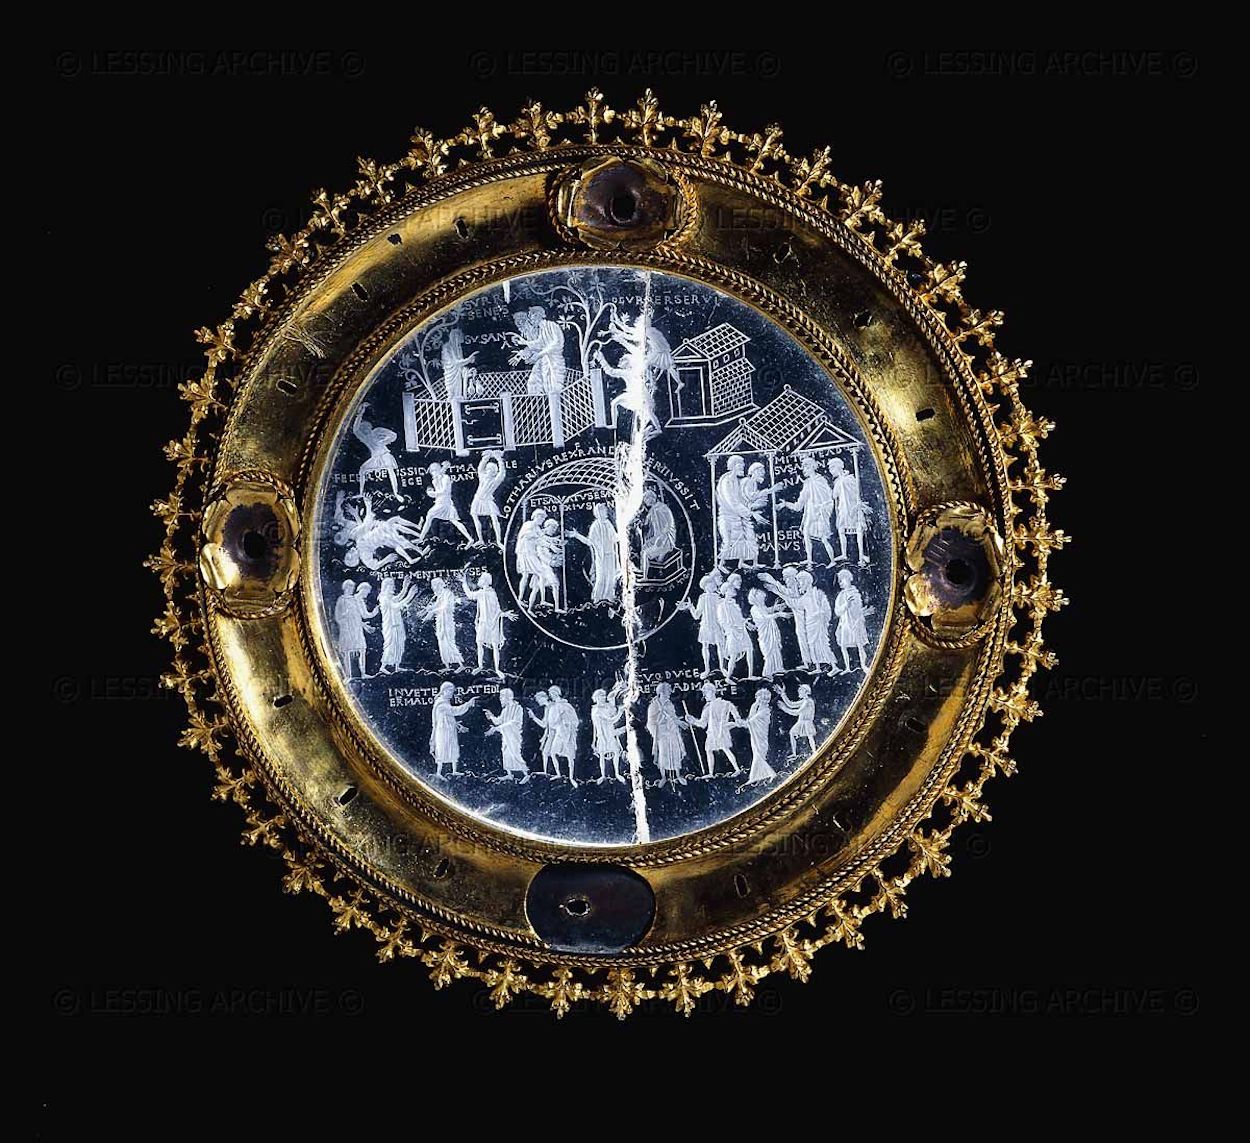 Der Lothair Kristall by Unbekannter Künstler - c. 855-869 - 11.4 cm Durchmesser British Museum